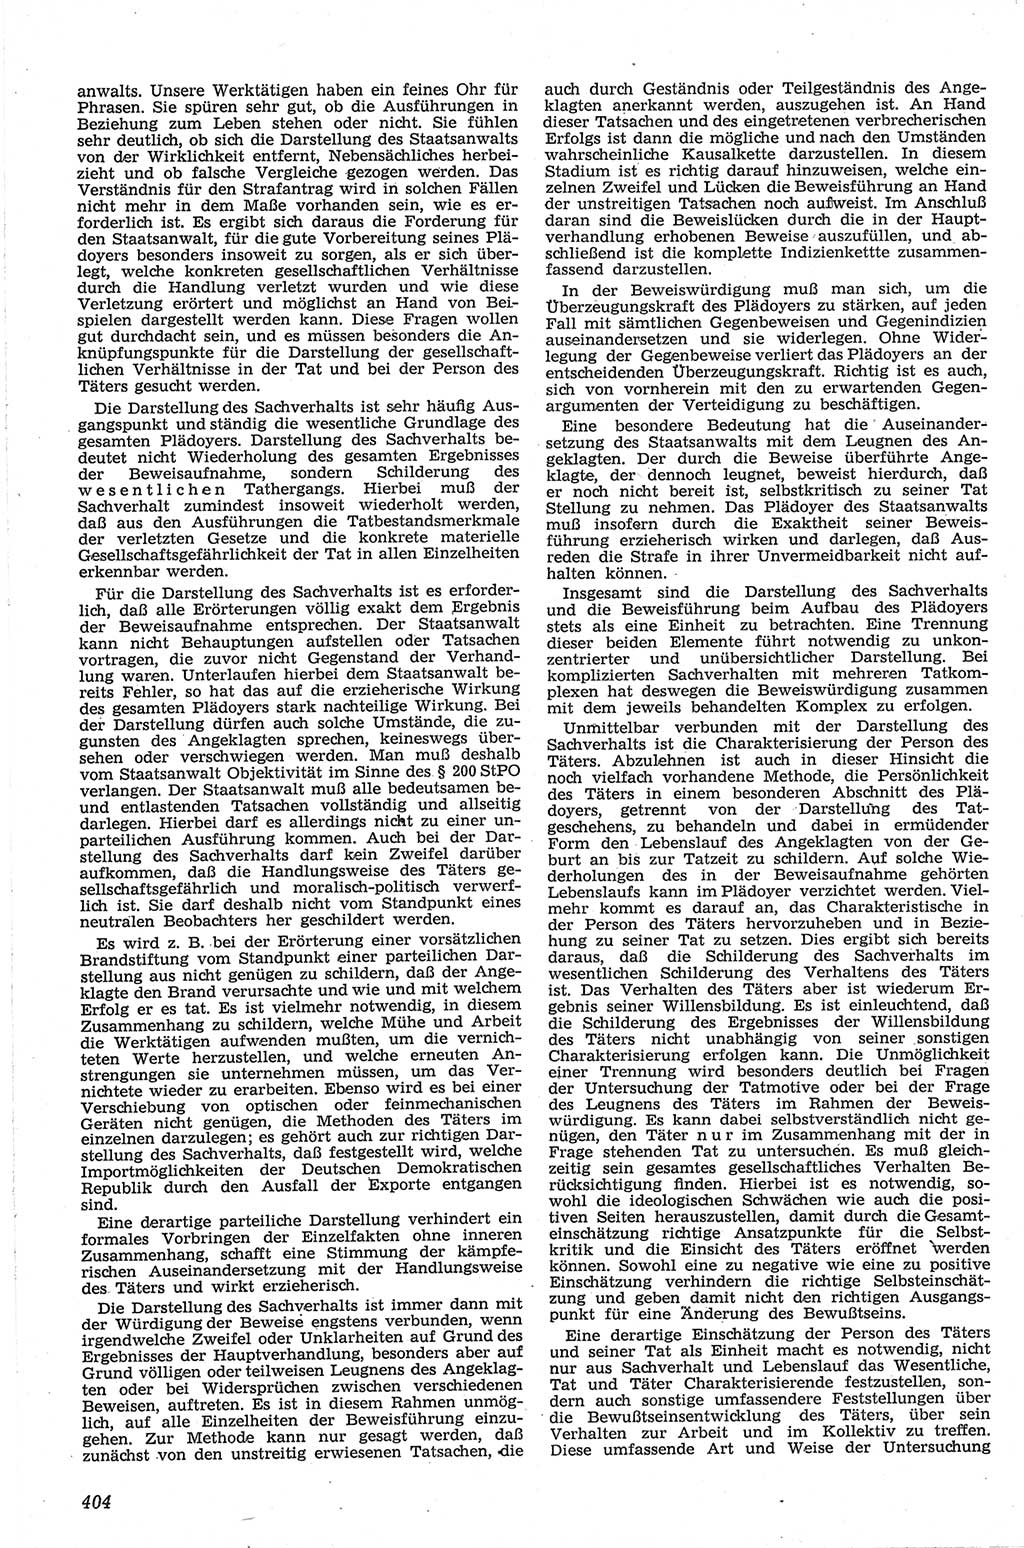 Neue Justiz (NJ), Zeitschrift für Recht und Rechtswissenschaft [Deutsche Demokratische Republik (DDR)], 13. Jahrgang 1959, Seite 404 (NJ DDR 1959, S. 404)